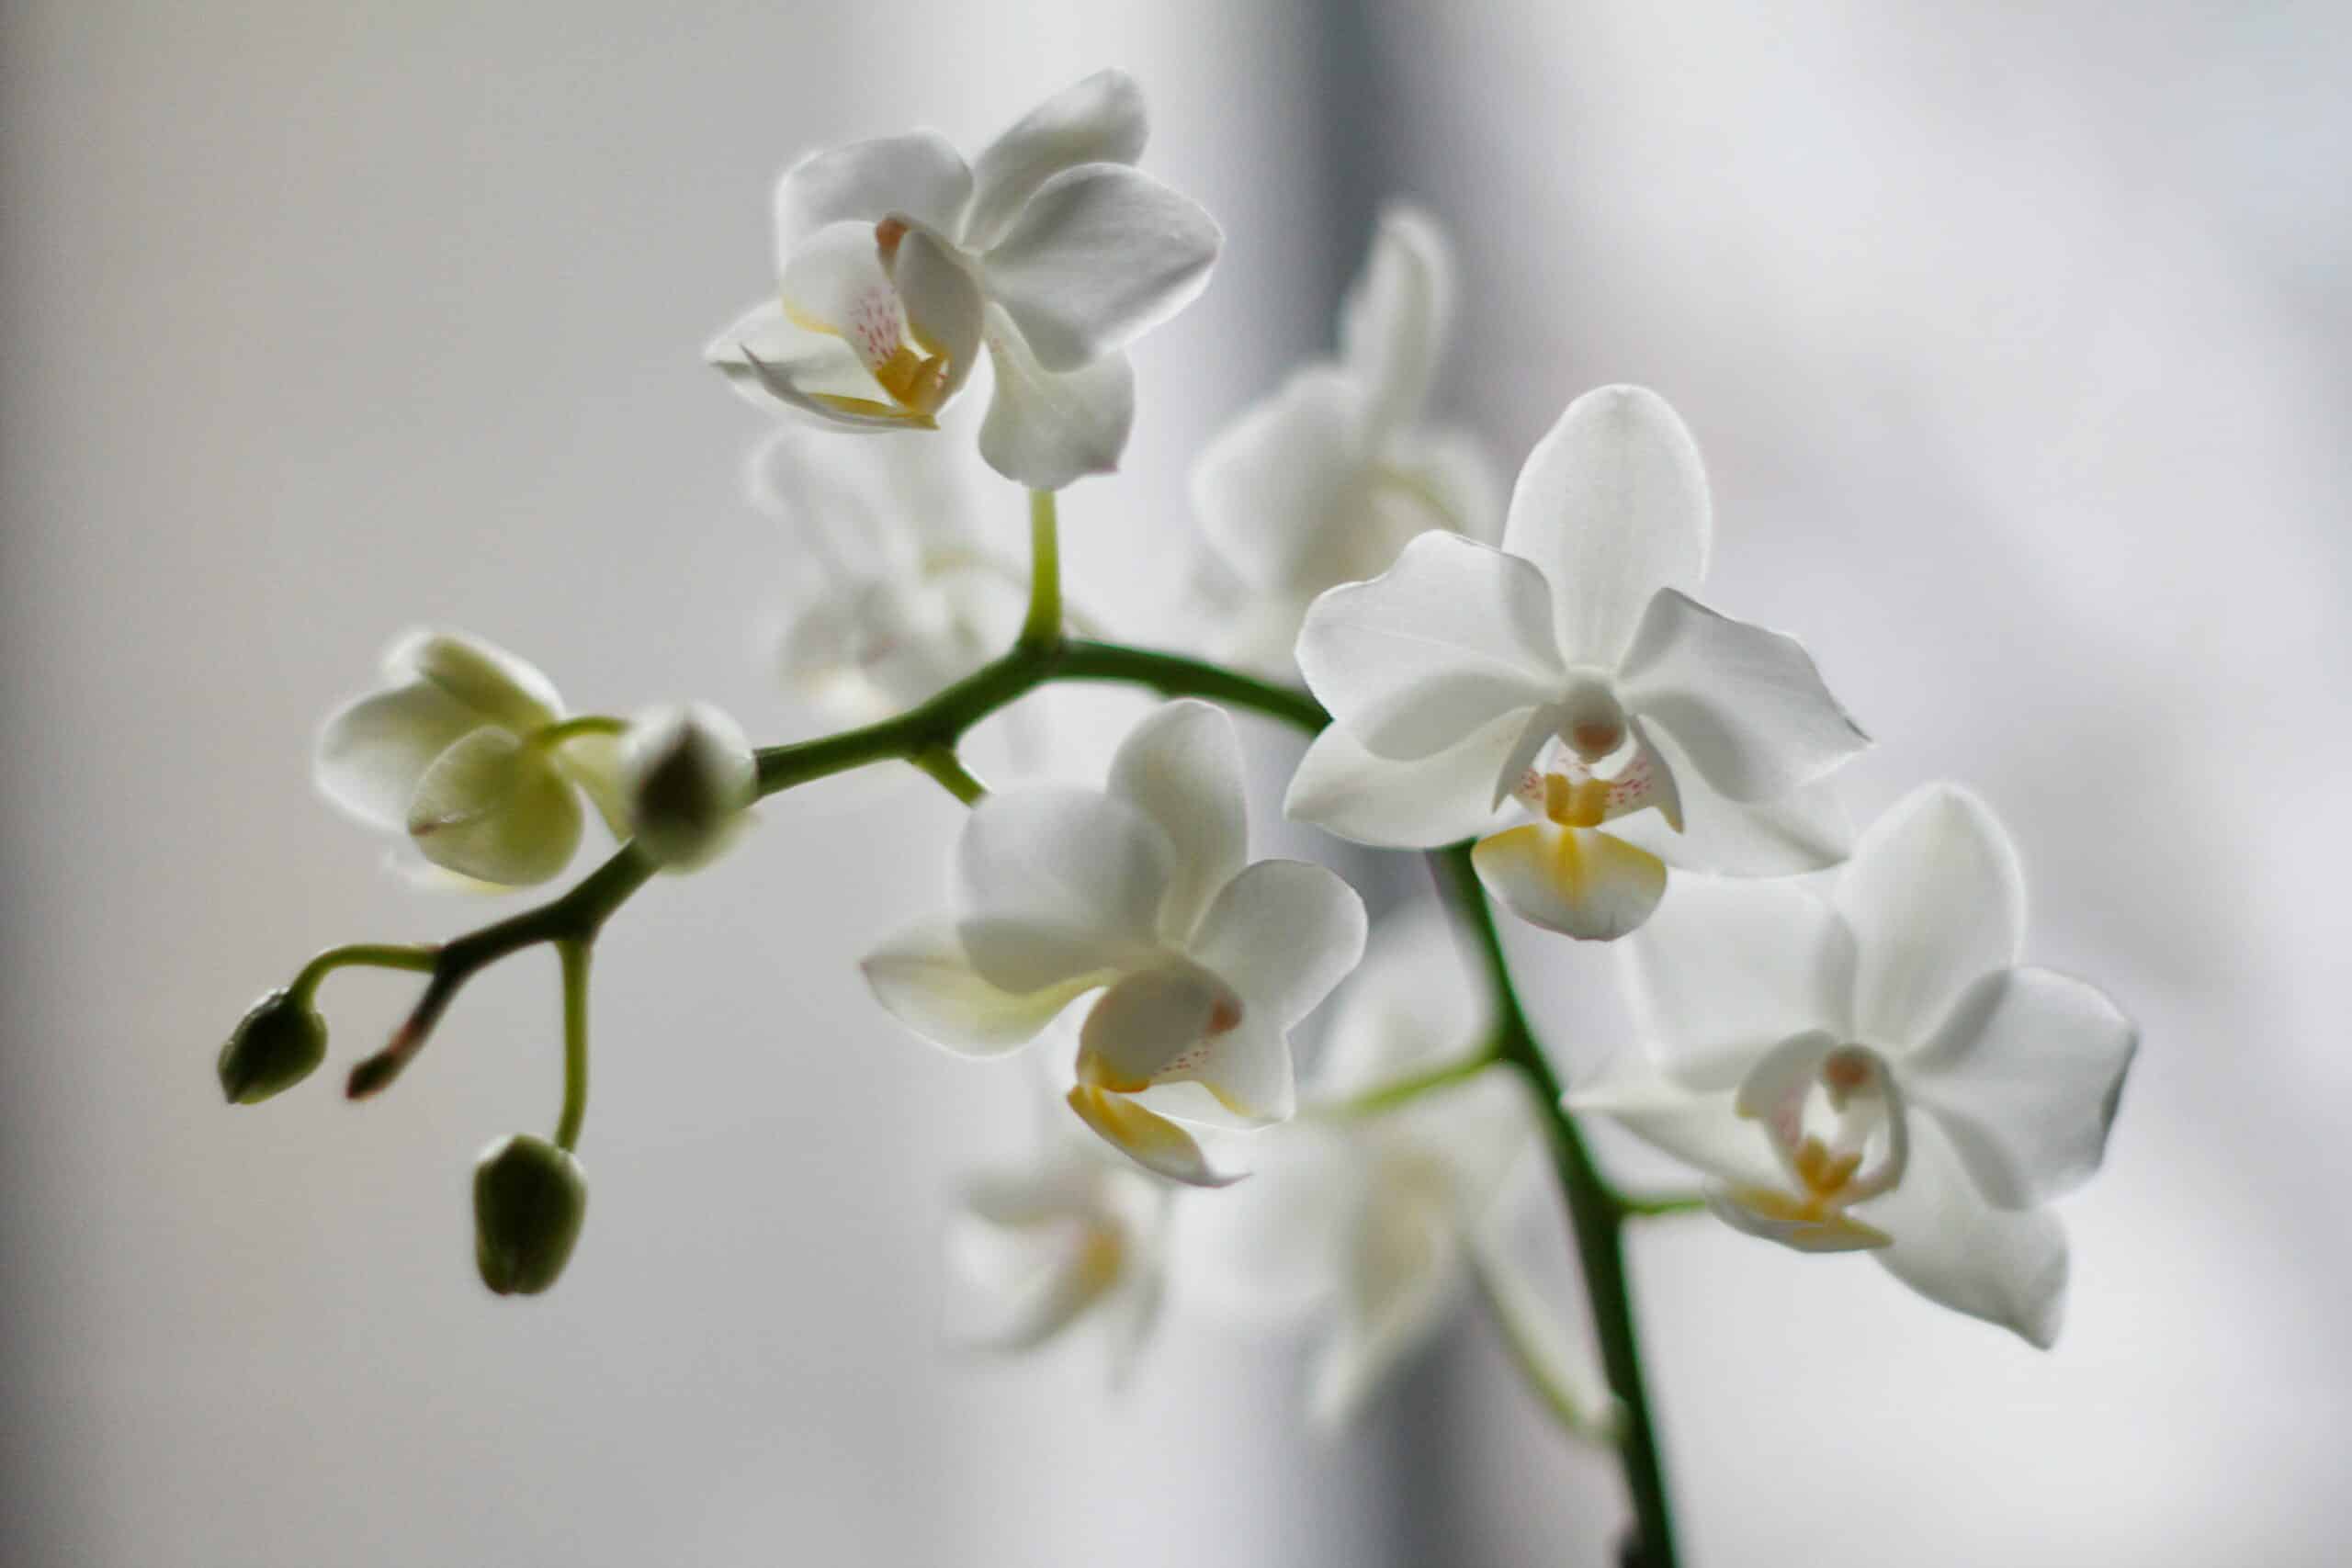 Este 10 de mayo, regala a mamá una orquídea del ‘Franz’